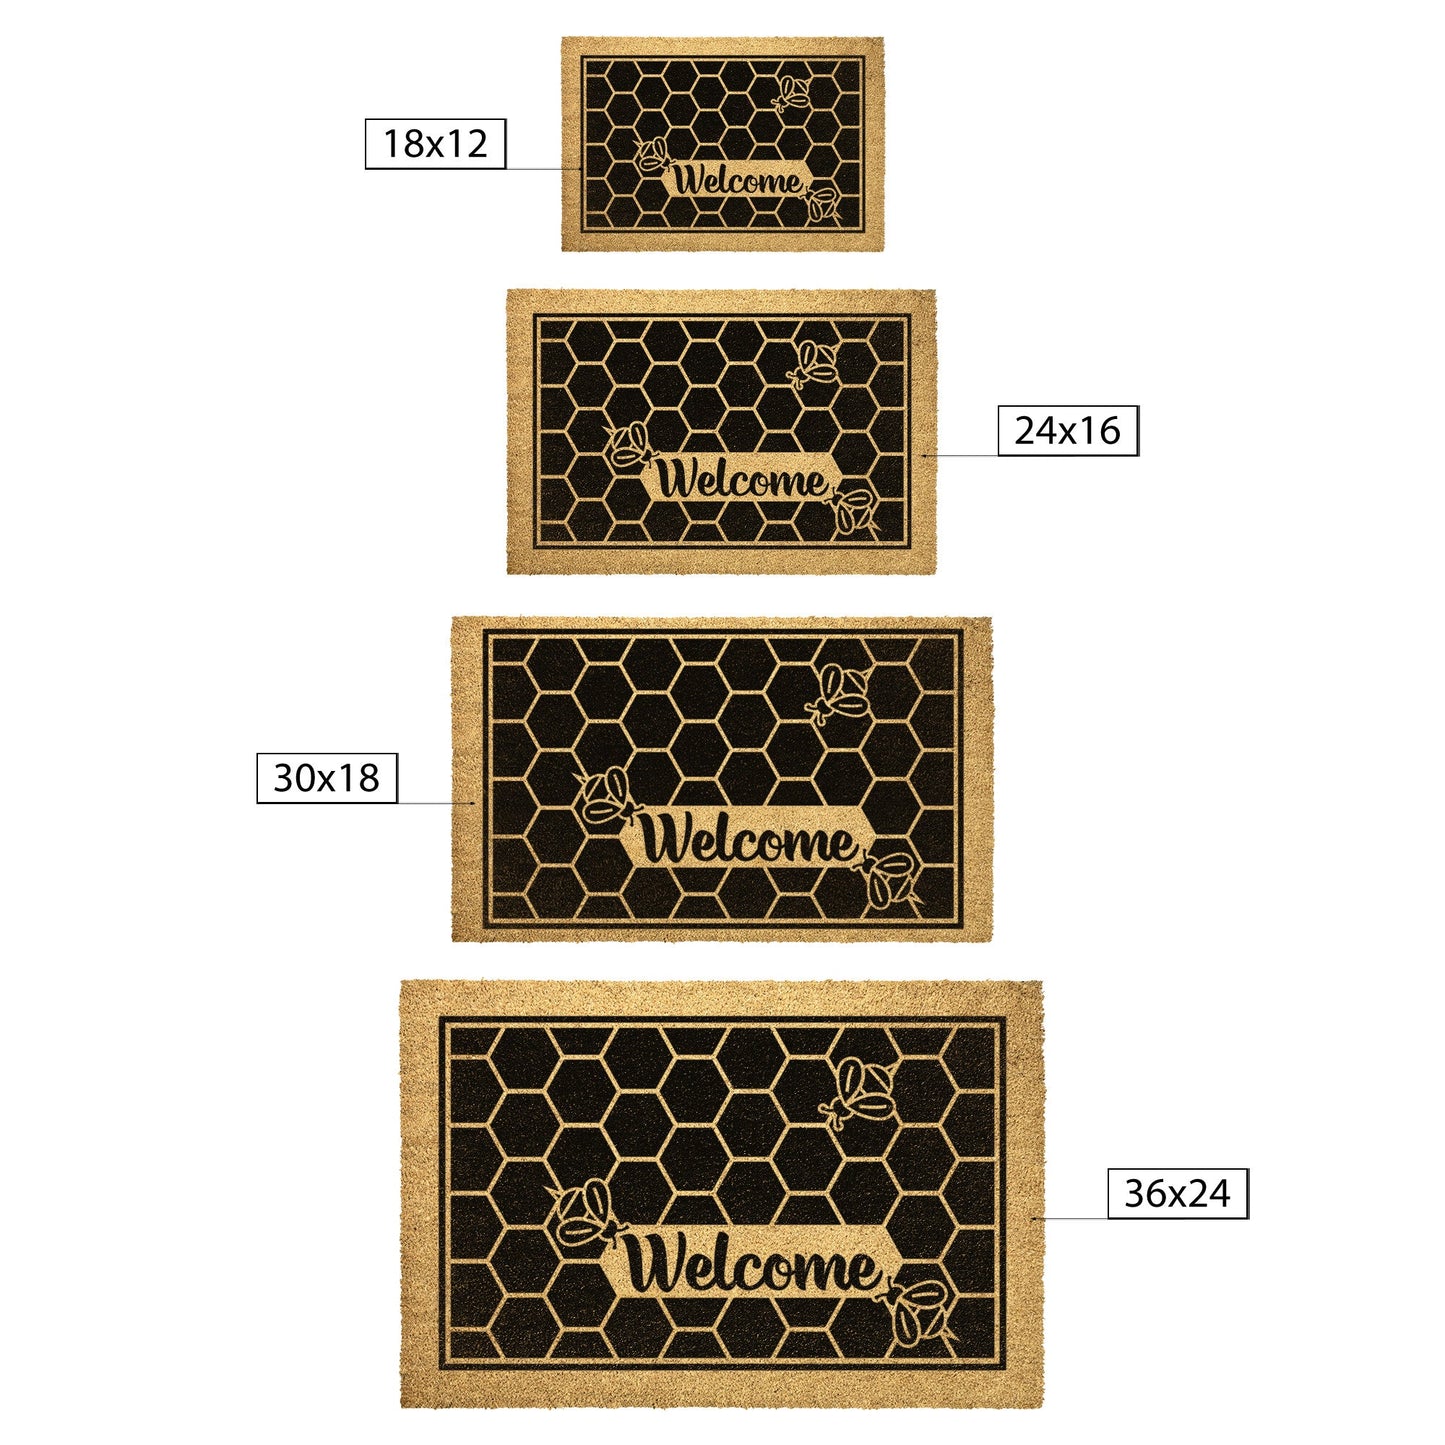 Honey Bee Welcome Mat | Spring Doormat | Hello Summer | Housewarming Gift | Bumble Bee Doormat Home Goods teelaunch 36x24 